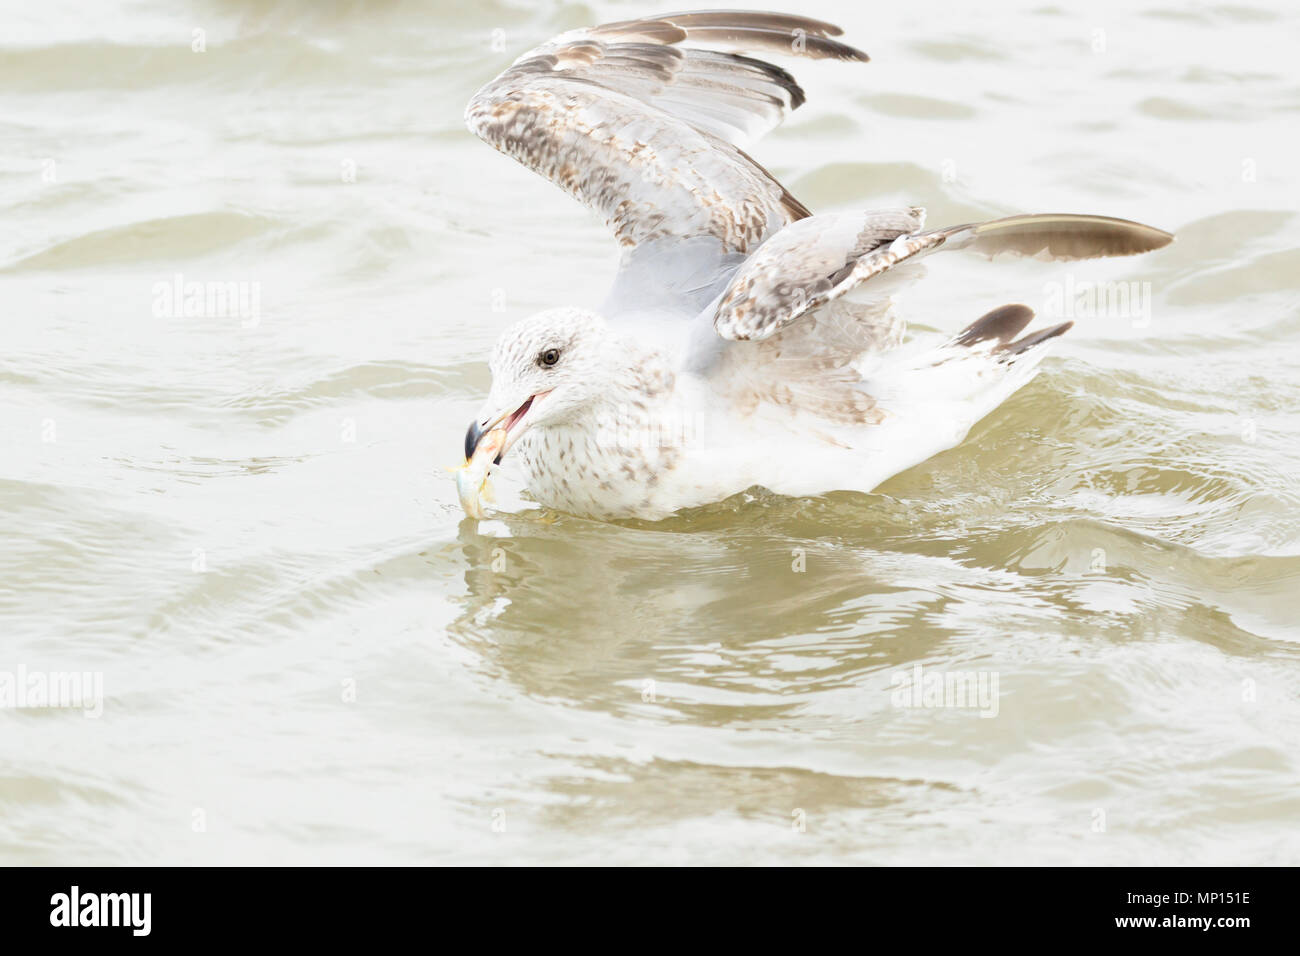 Belgium, West Flanders, Oostduinkerke, seagulls in North Sea Stock Photo